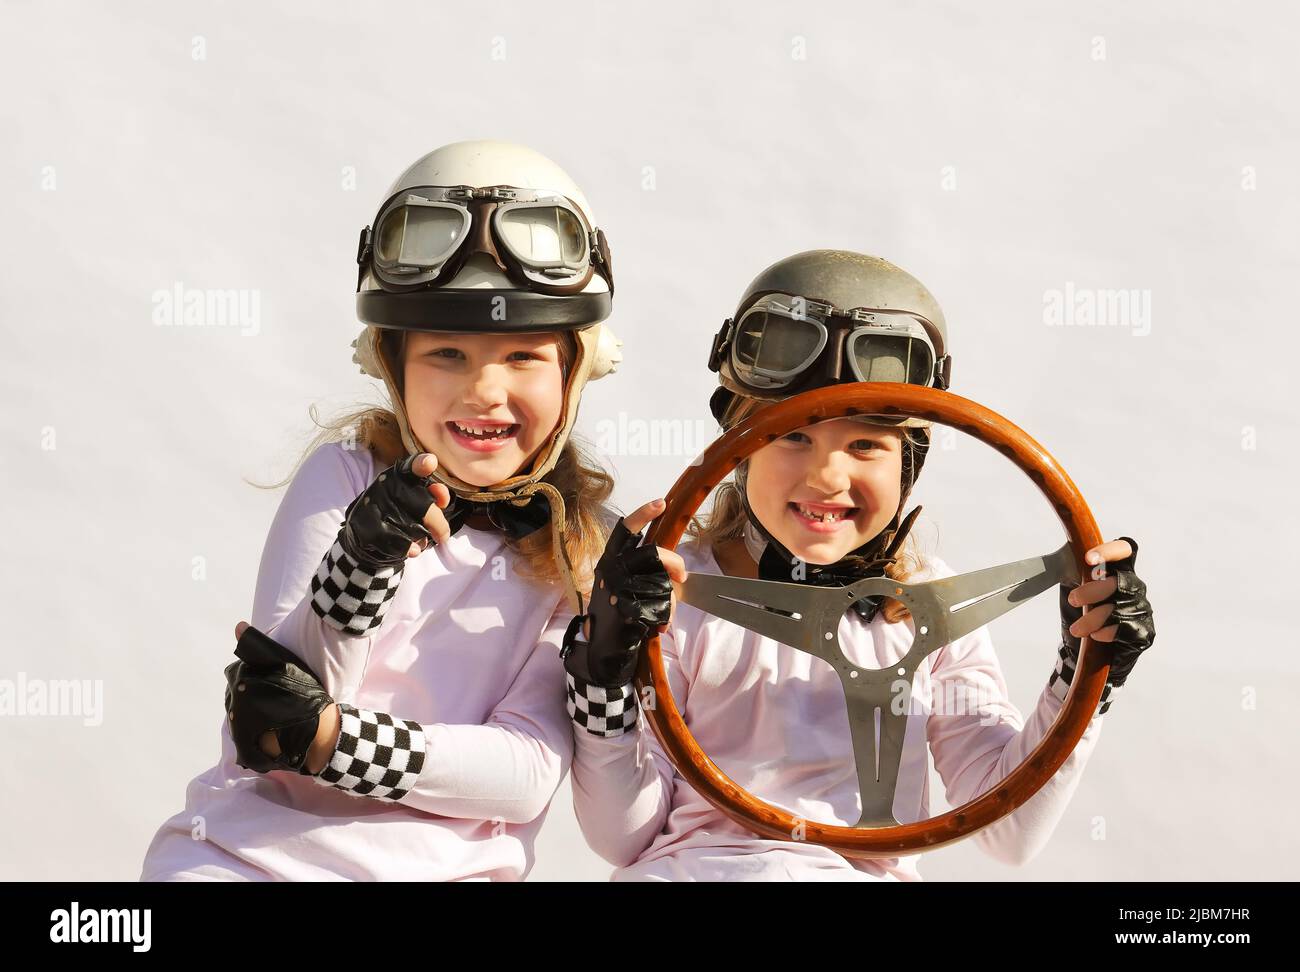 Les sœurs jumelles imaginent qu'elles conduisent une voiture de sport. Ils portent des casques vintage, des lunettes et utilisent un ancien volant en bois comme support. Banque D'Images